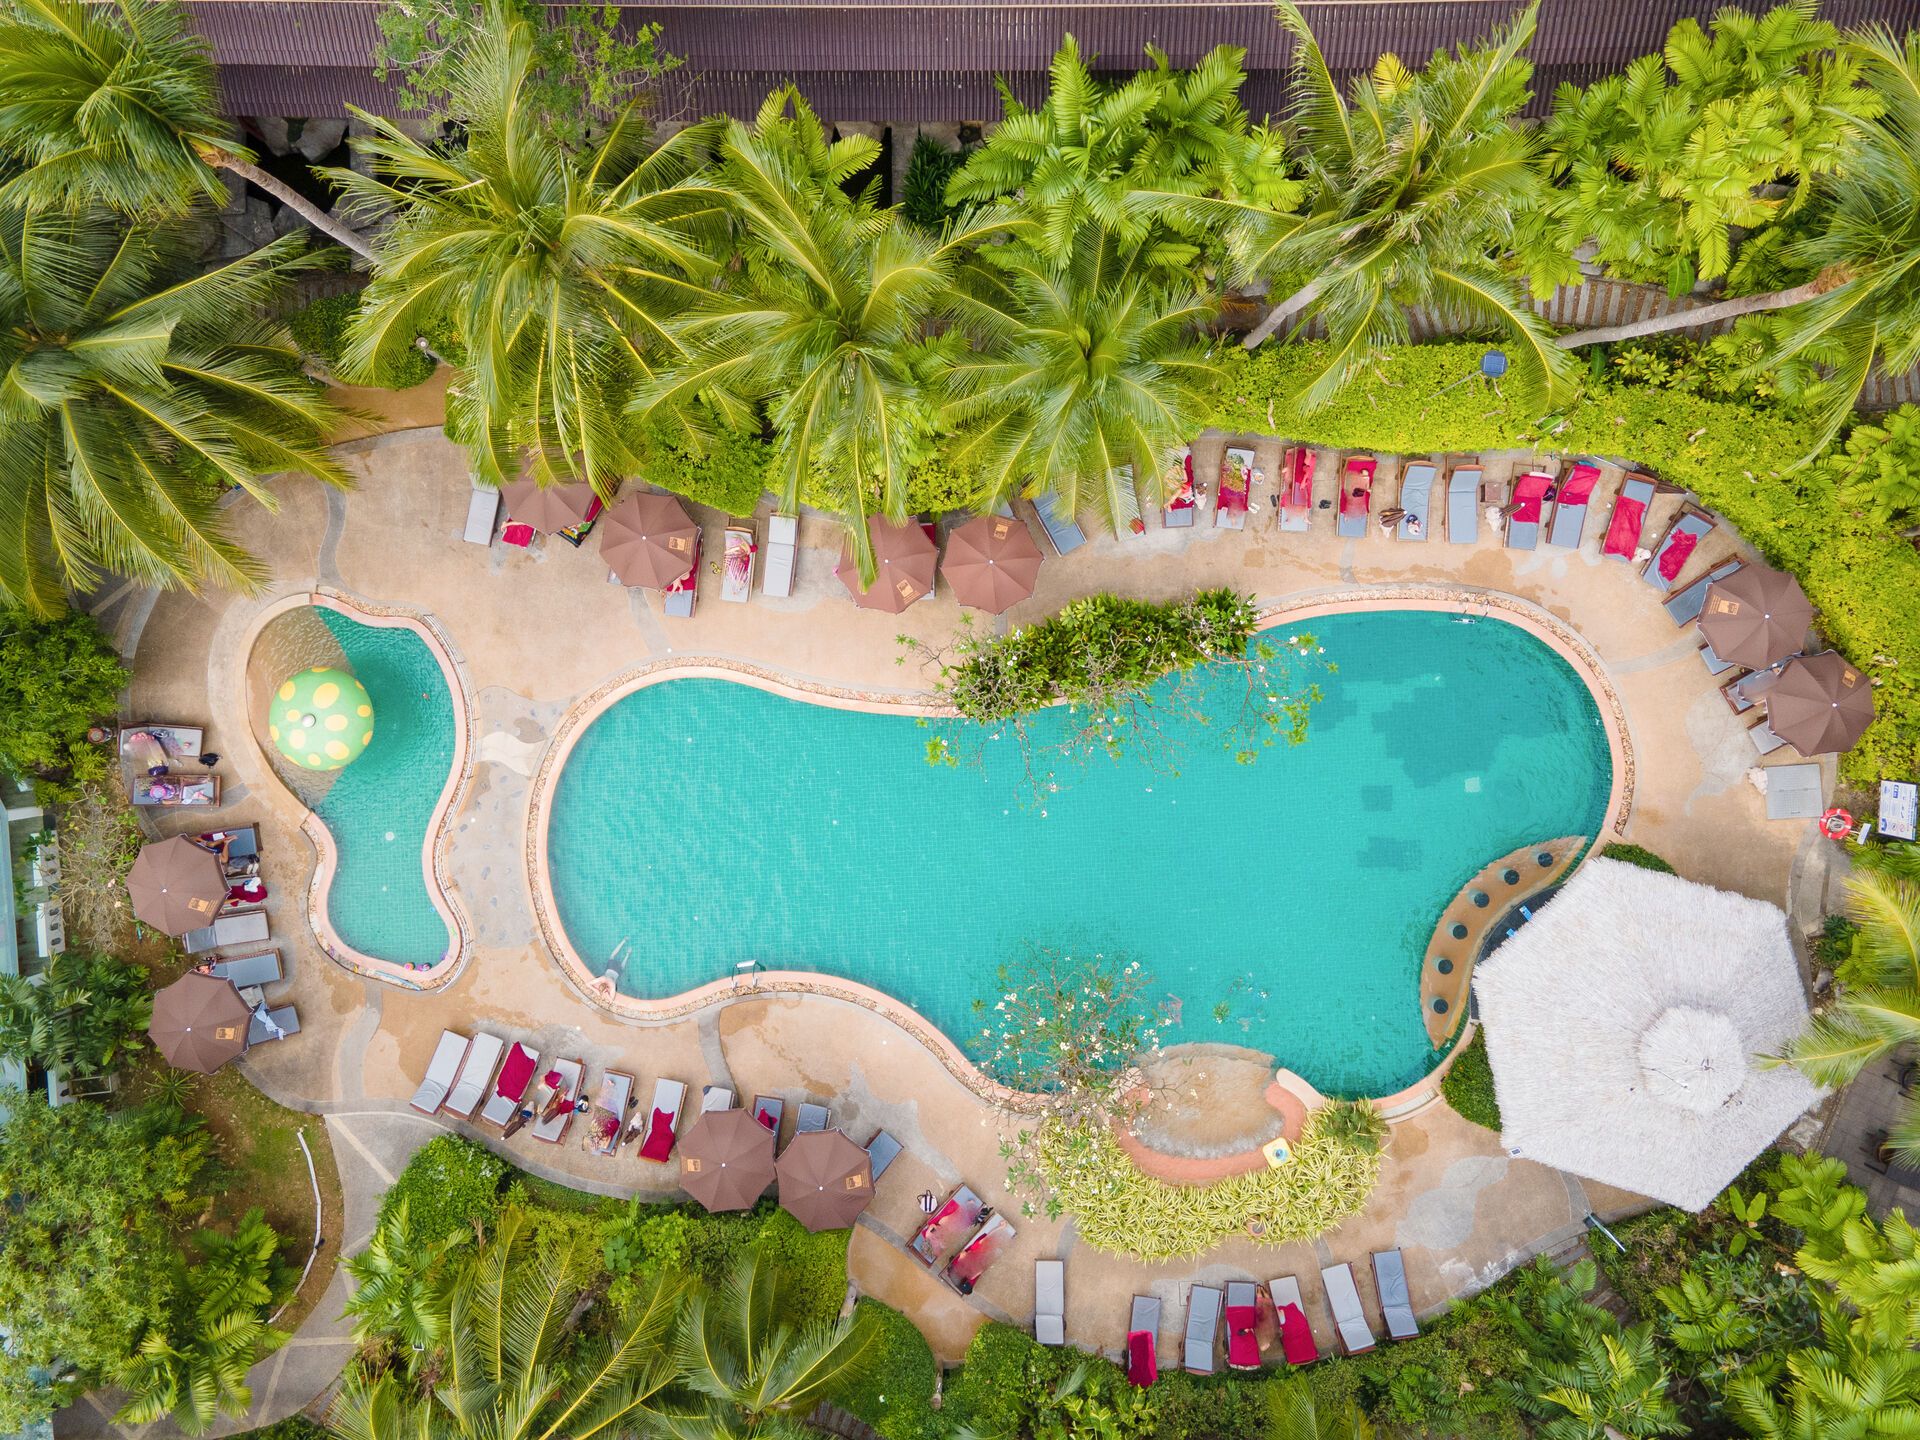 Thaïlande - Phuket - Hôtel Kata Palm Resort & Spa 3*